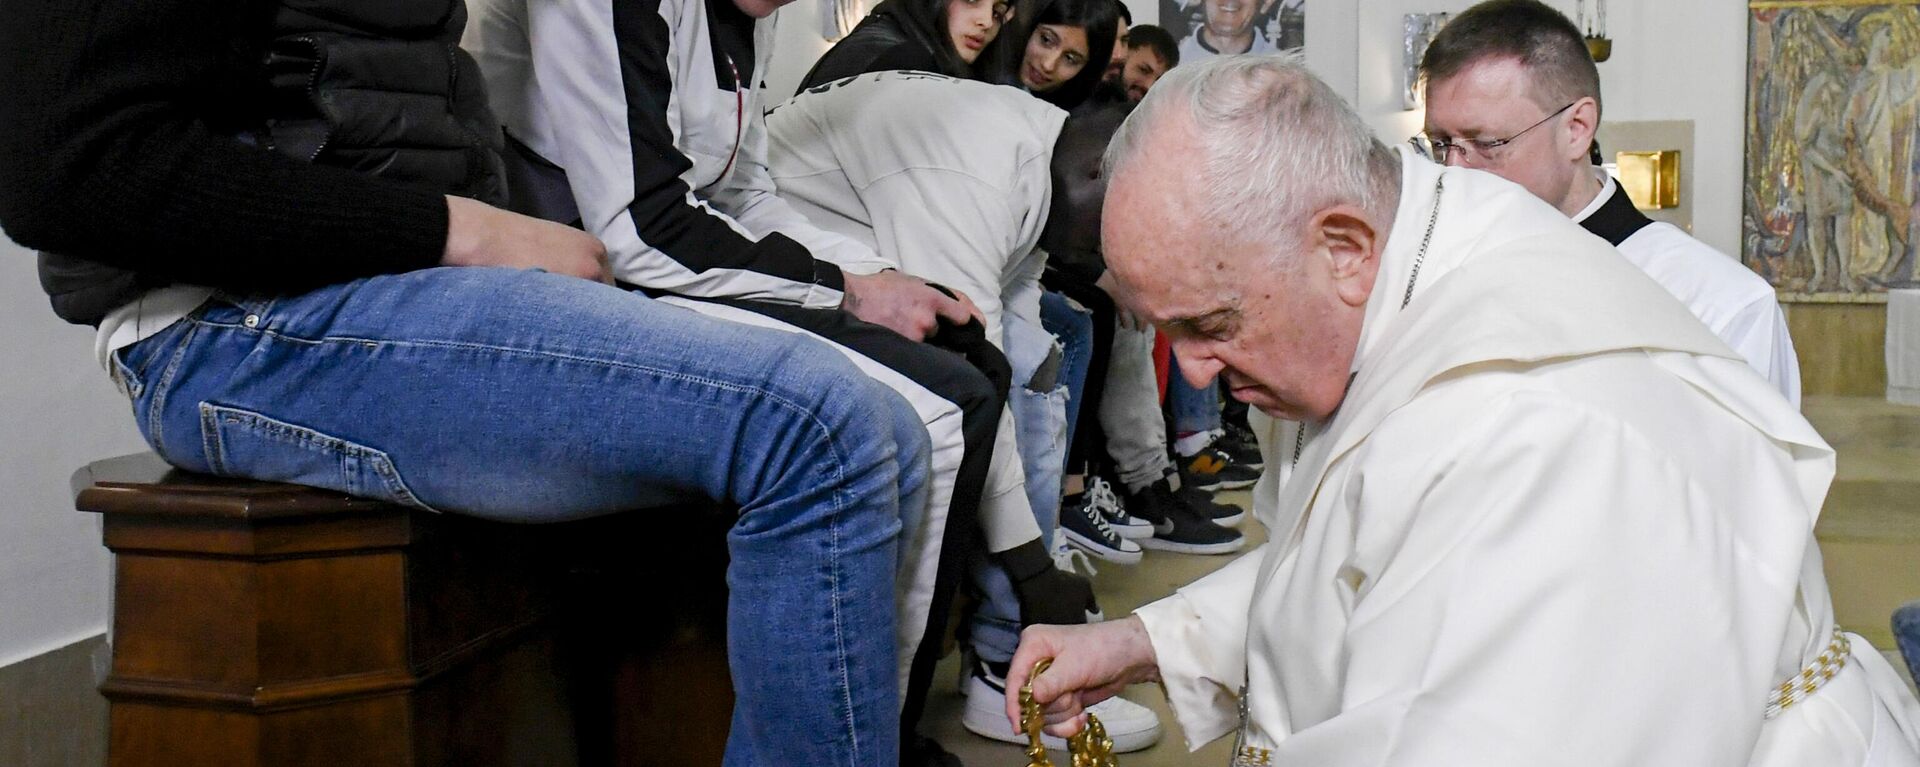 Papa Francis, Paskalya öncesi düzenlenen geleneksel törende ıslahevinde kalan 12 genç mahkumun ayaklarını yıkadı, sonrasında da öptü. Papa'nın ayaklarını yıkayıp öptüğü kişiler arasında Senegalli bir Müslüman genç ve iki kadın da bulunuyor. - Sputnik Türkiye, 1920, 07.04.2023